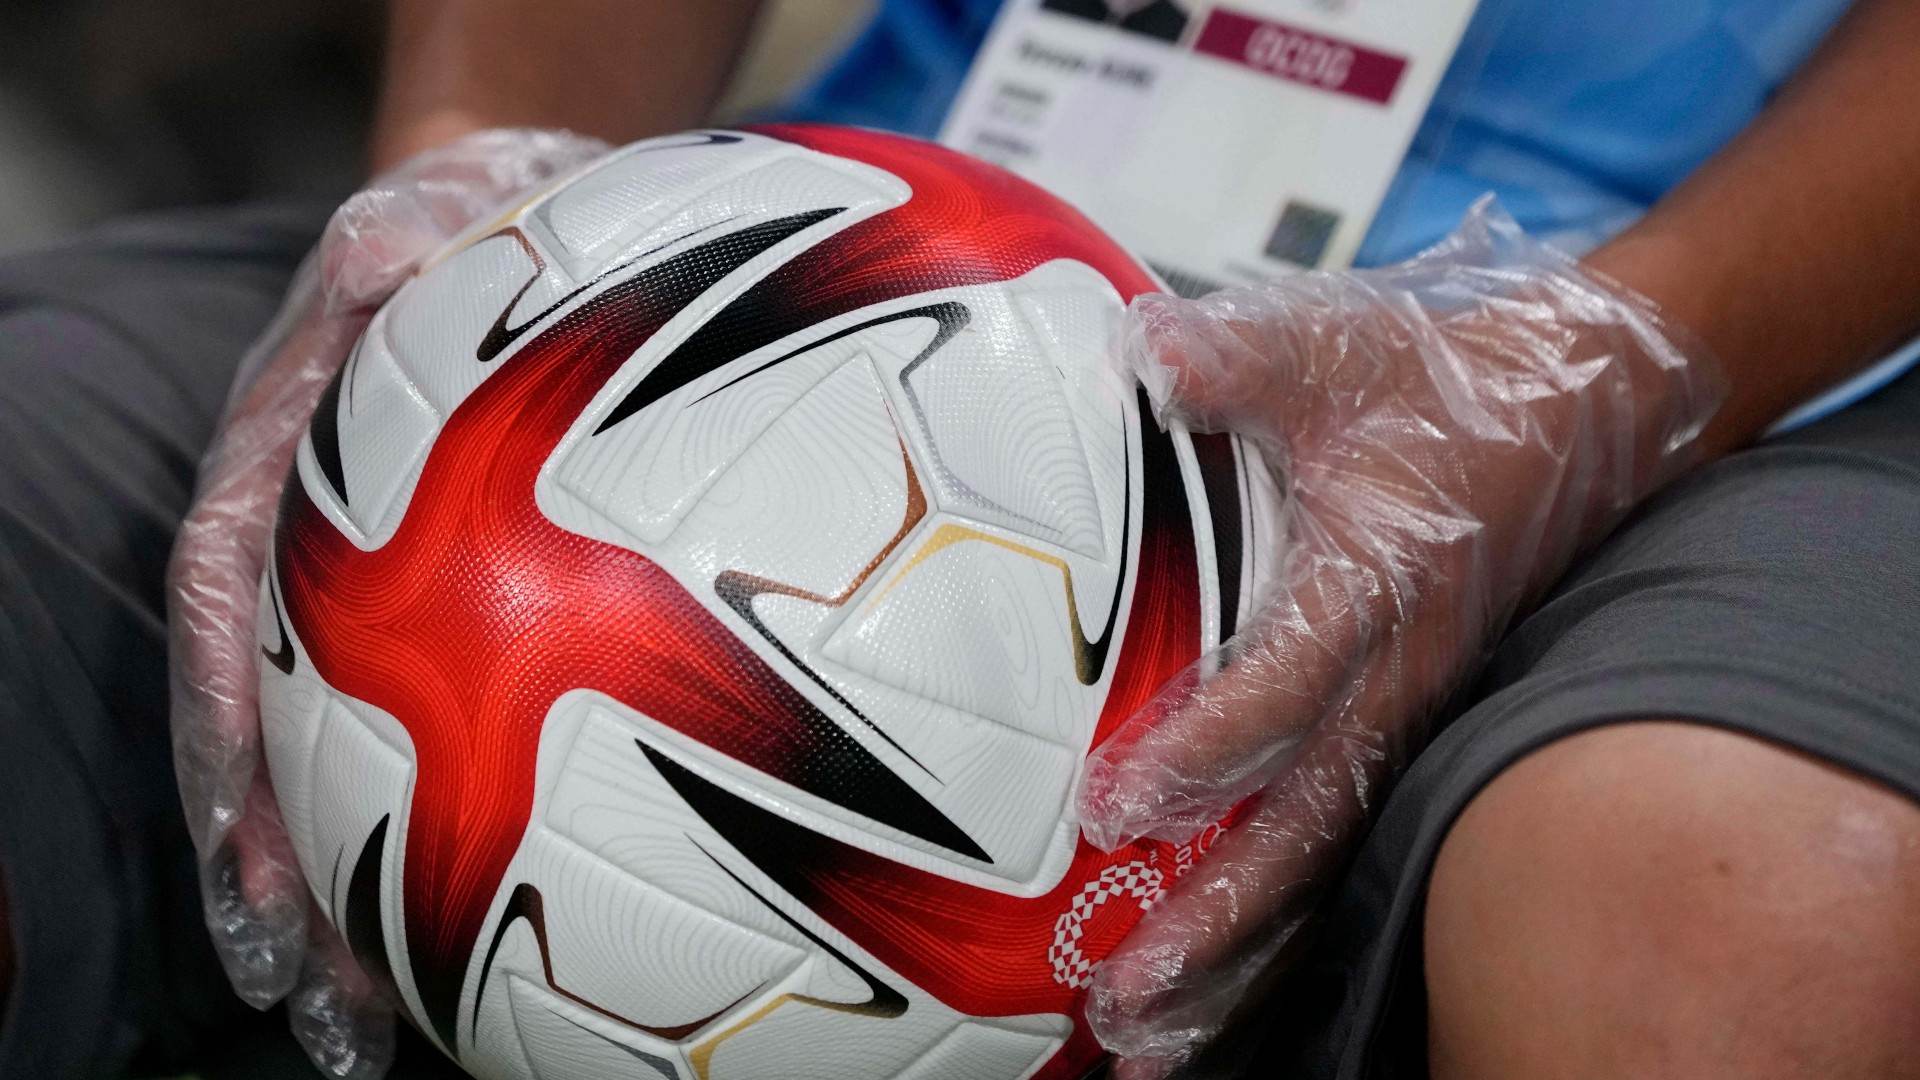 Voluntário em Tóquio usa luvas para segurar bola de futebol nos Jogos